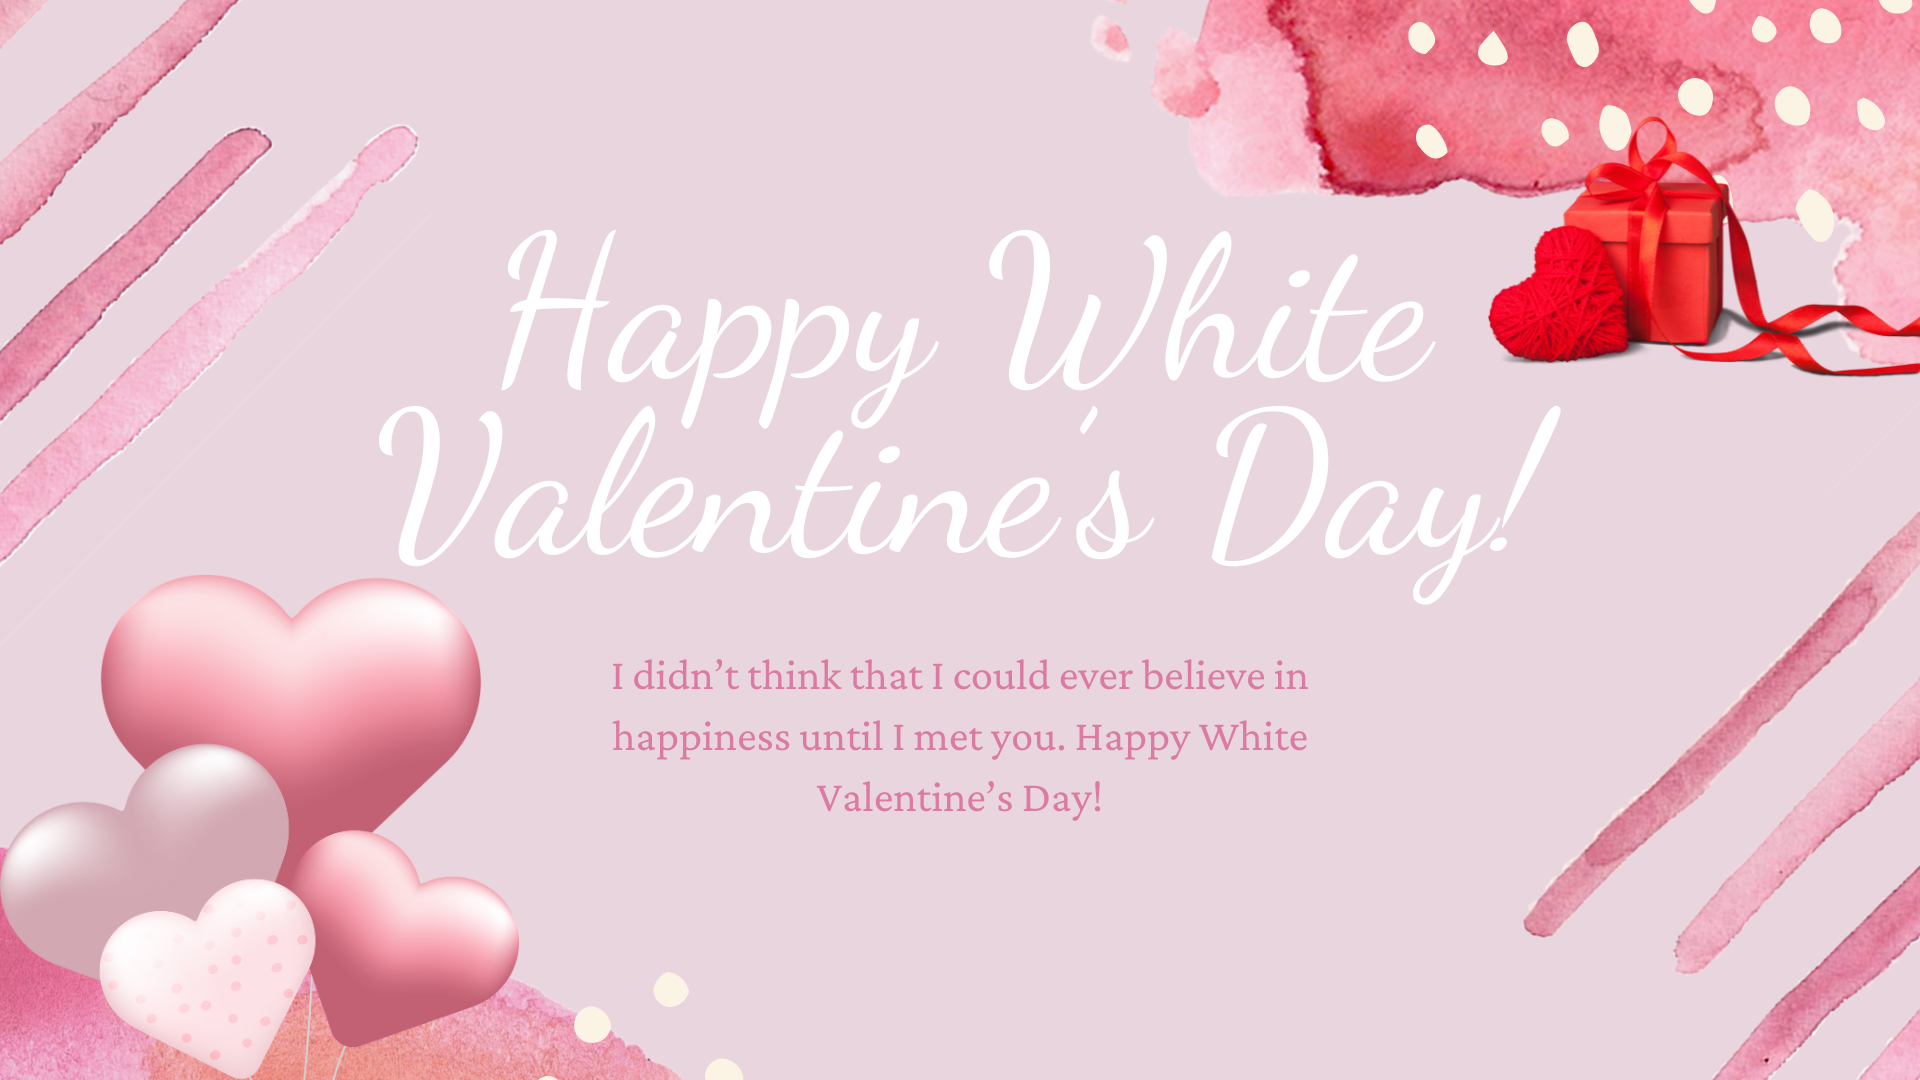 Lời chúc ngày Valentine trắng 14/3 sẽ giúp người ấy cảm thấy hạnh phúc.